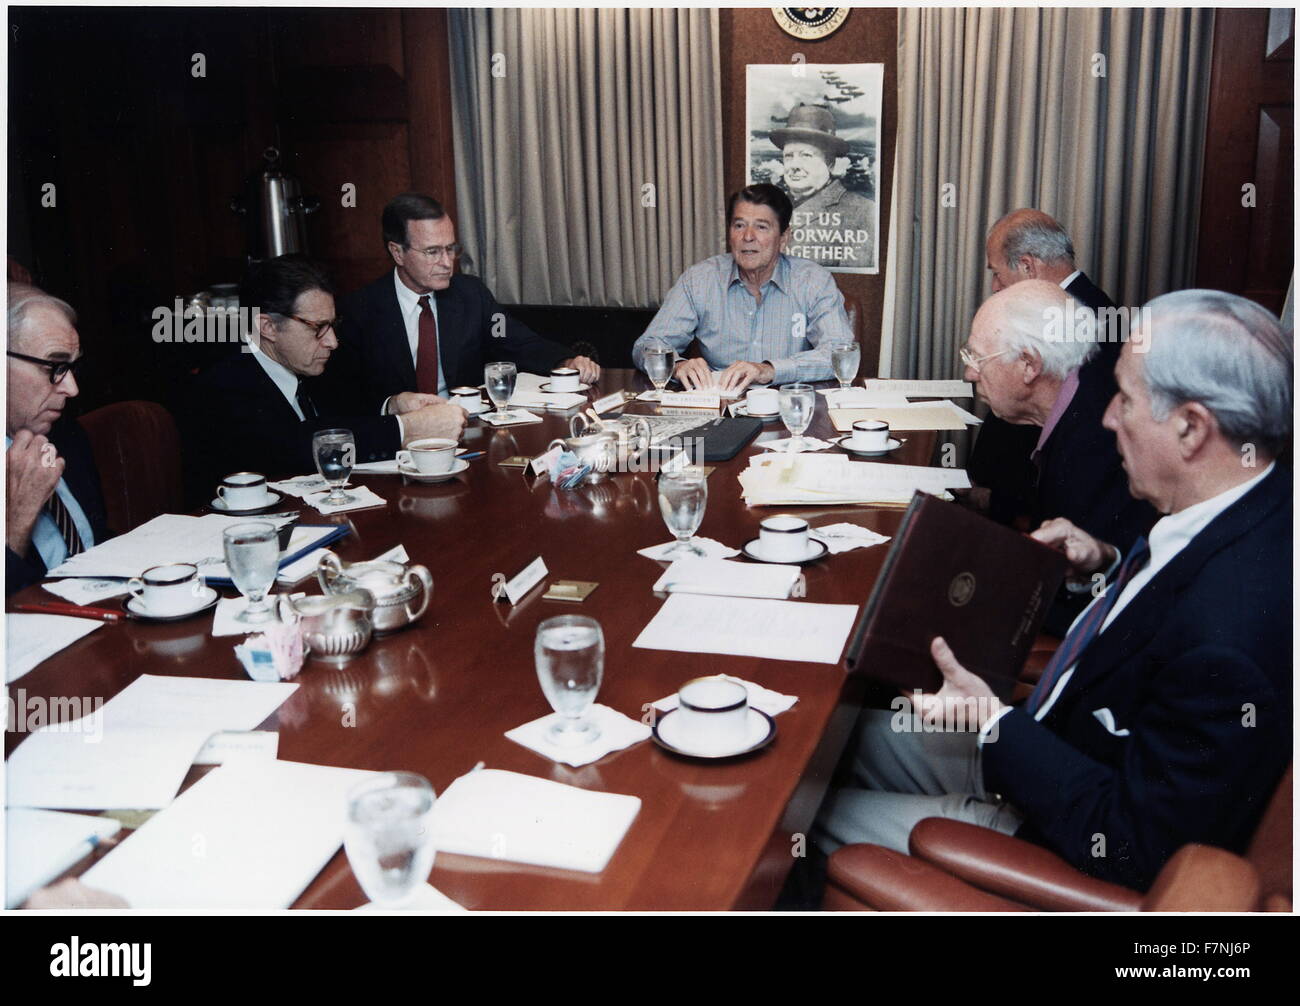 Photographie du président Ronald Reagan la tenue d'une réunion du Conseil national de sécurité sur la piraterie aérienne TWA dans la situation Room de la Maison Blanche. Datée 1985 Banque D'Images